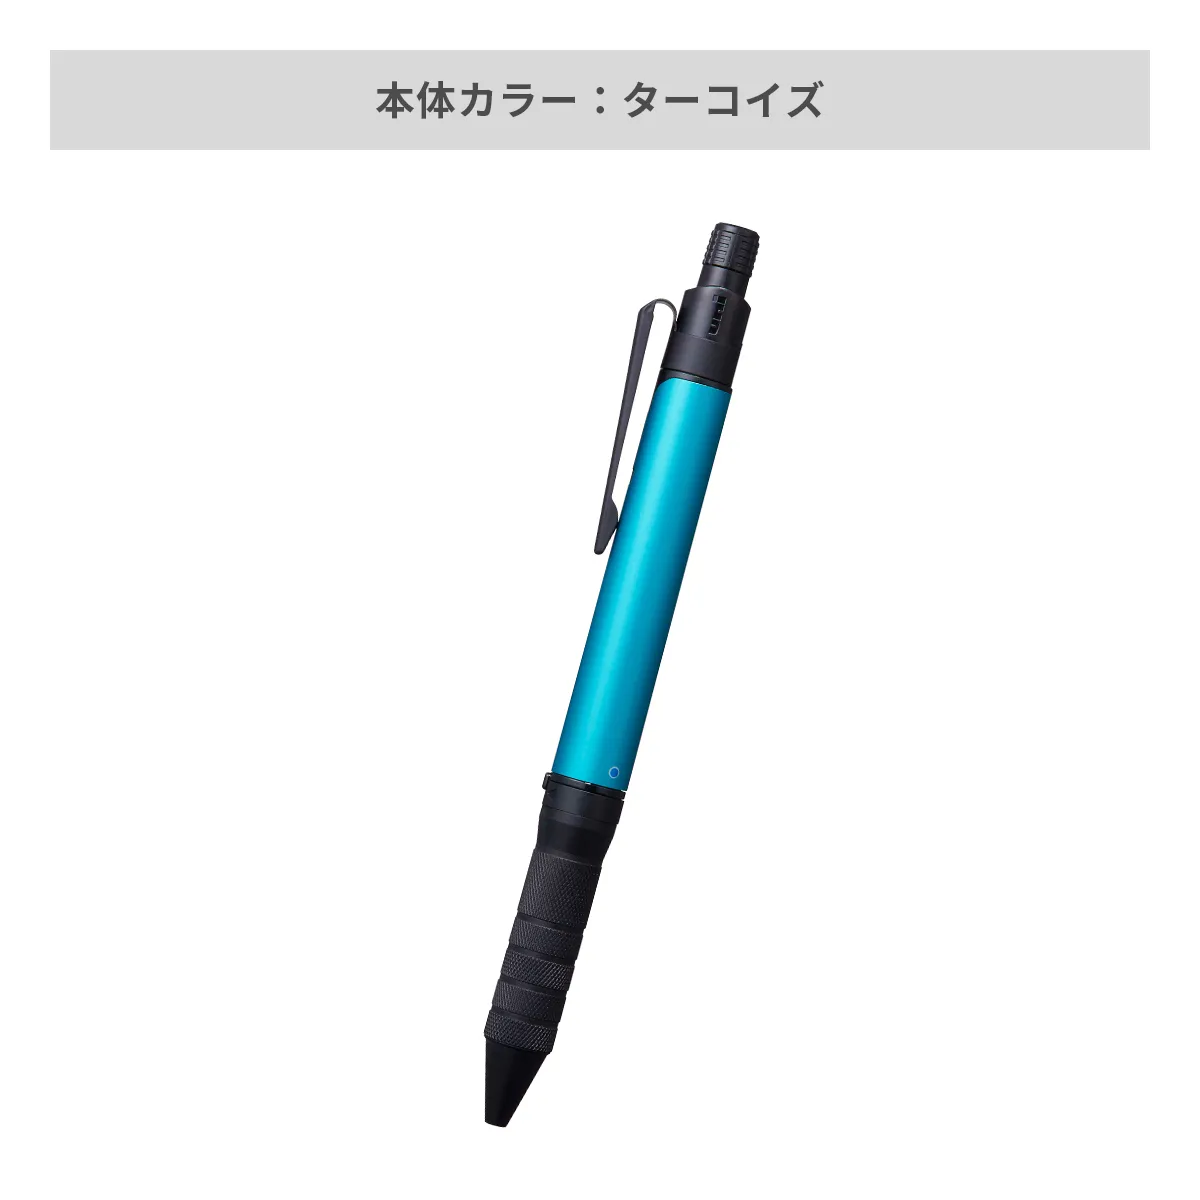 三菱鉛筆 ユニボール アールイー3ビズ 0.5mm【名入れボールペン / パッド印刷】 画像7